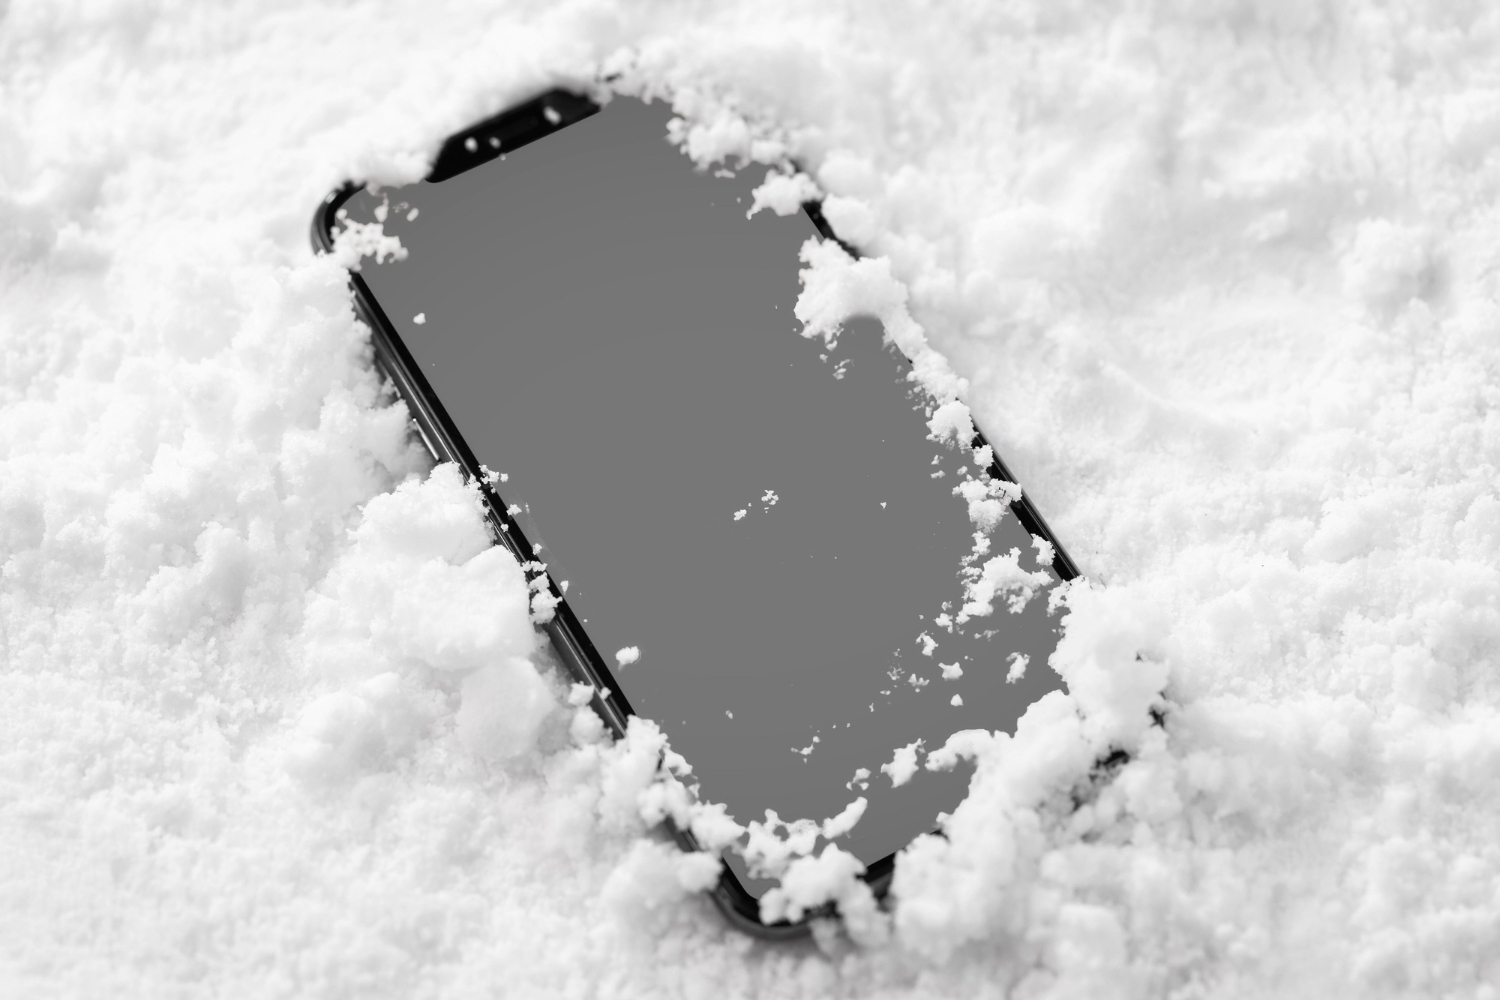 Телефон упал в снег и не работает - что делать, советы | РБК Украина